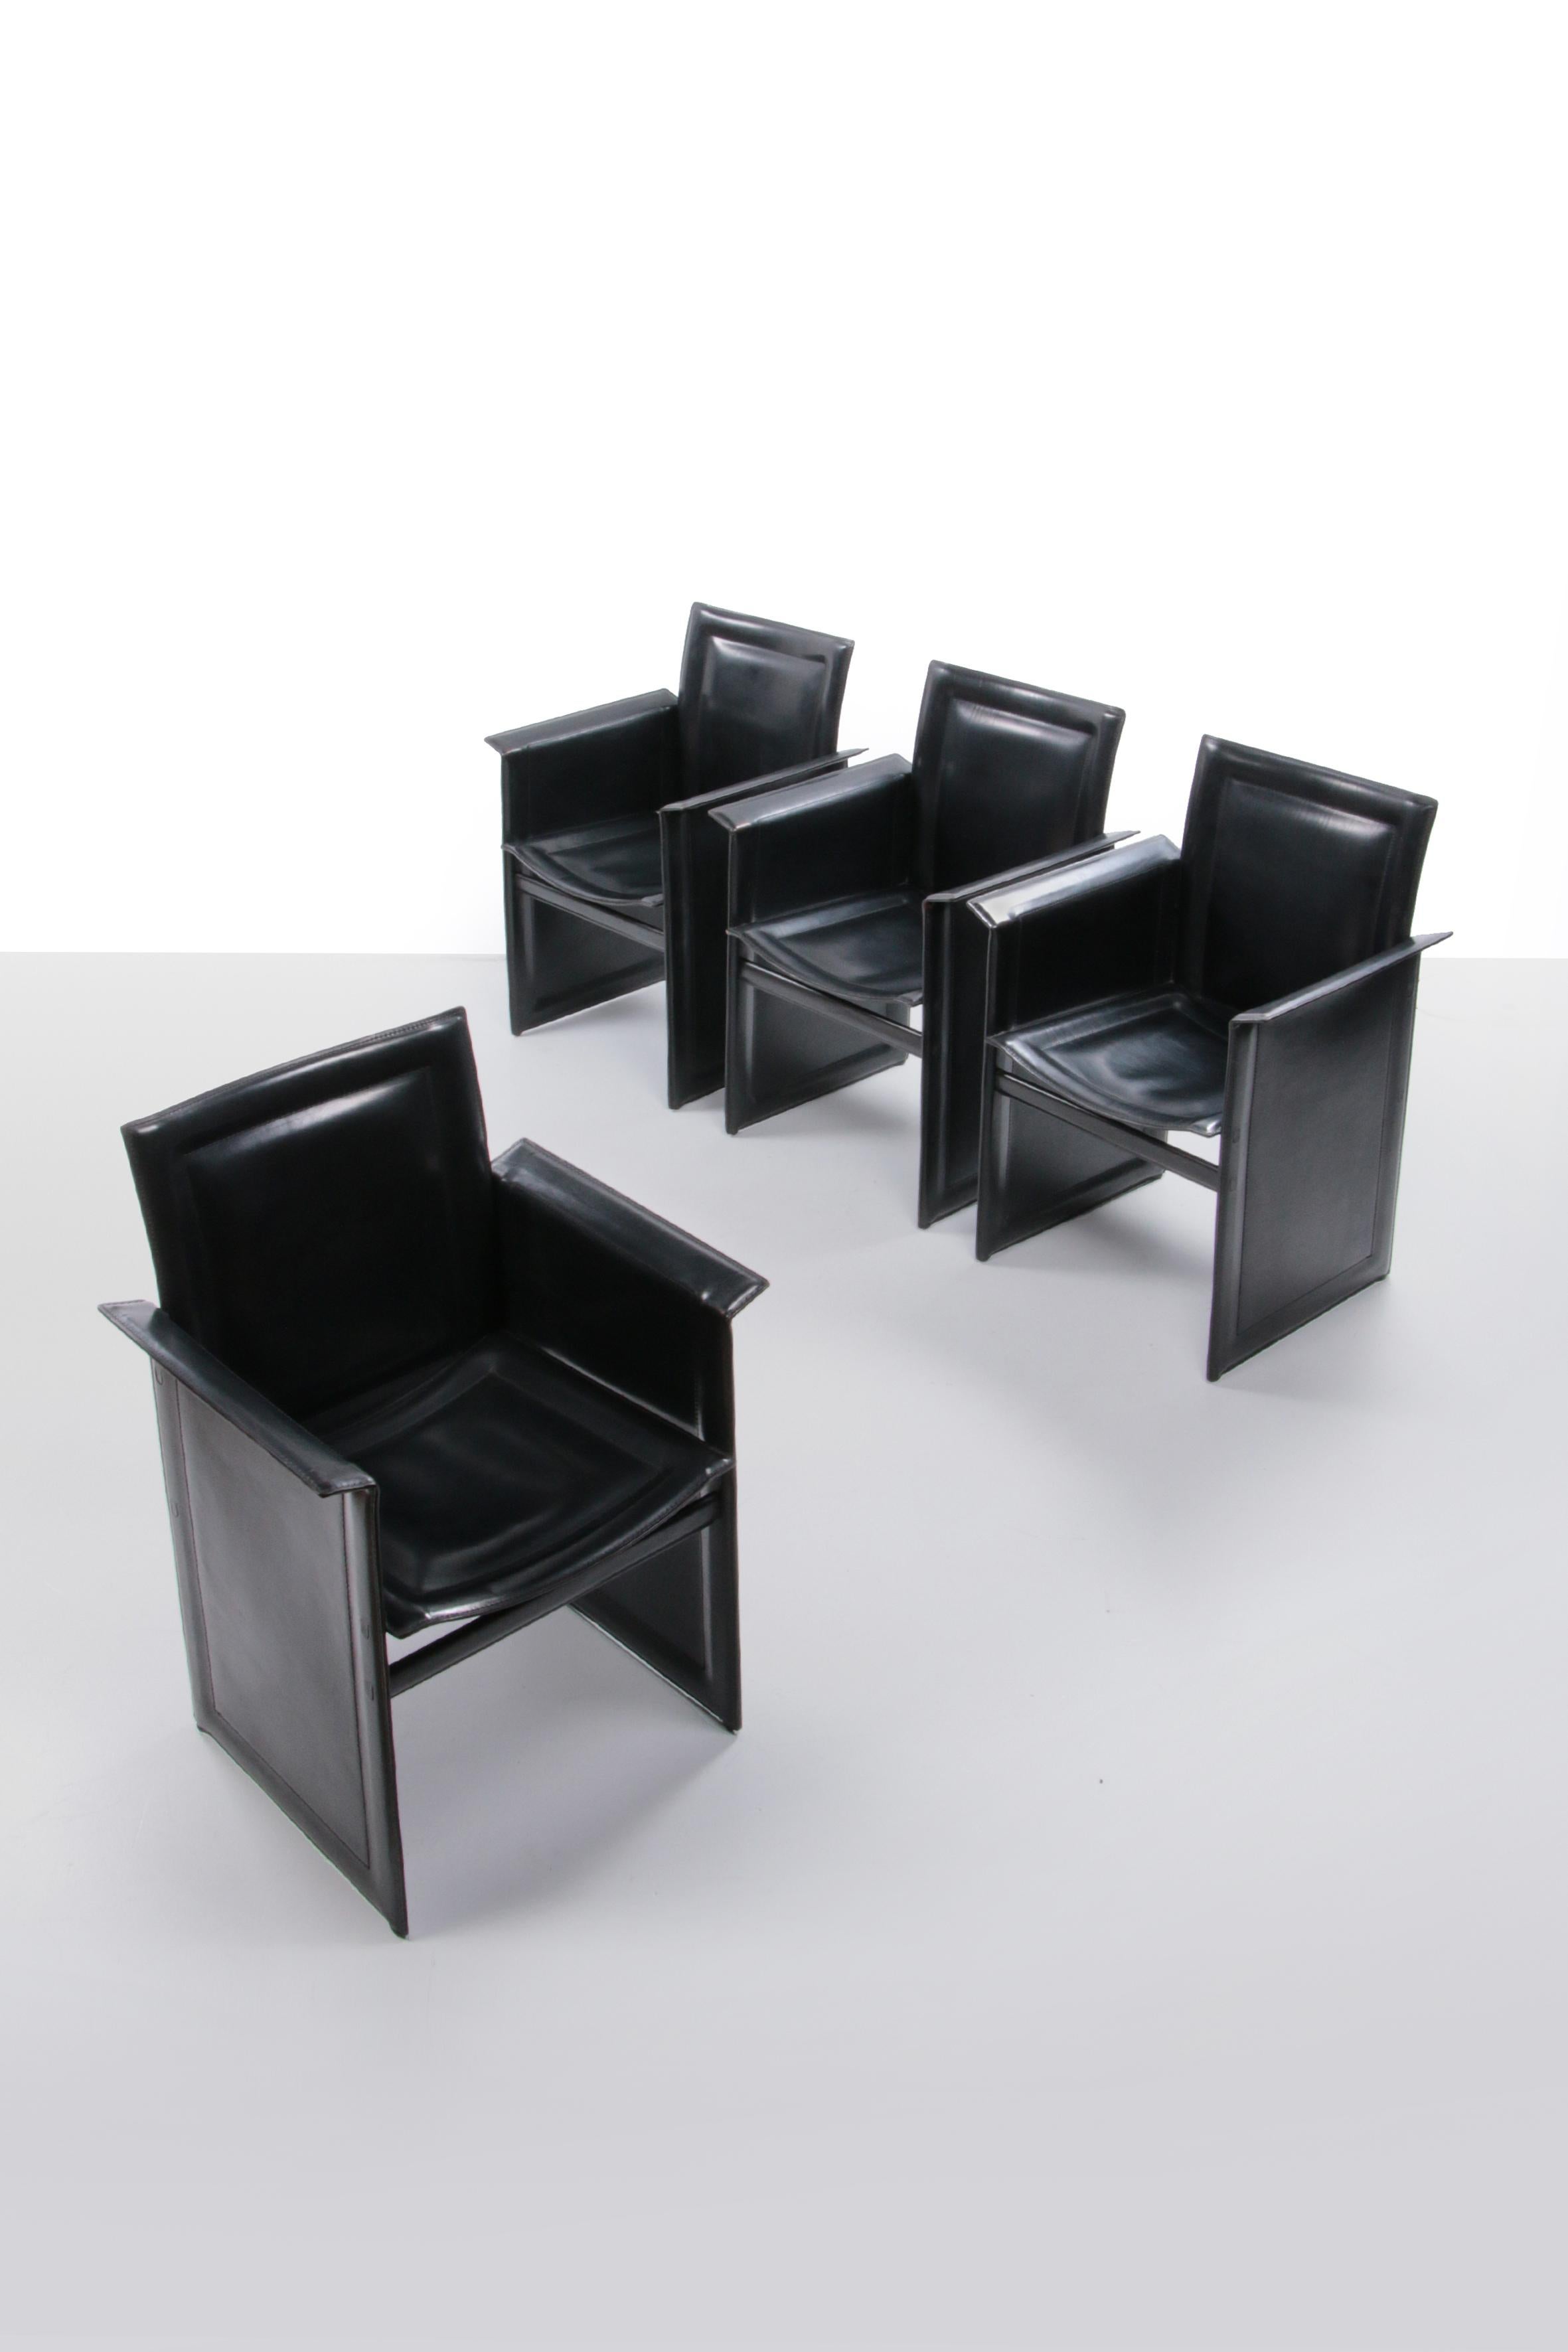 Solaria Leder-Set aus 4 Esszimmerstühlen, hergestellt von Arrben, Italien, 1970.


Italienischer Midcentury Modern Design Satz von 6 cognacfarbenen Ledersesseln (entworfen von Tito Agnoli), hergestellt von Arrben, Italien, 1970er Jahre.

Modell